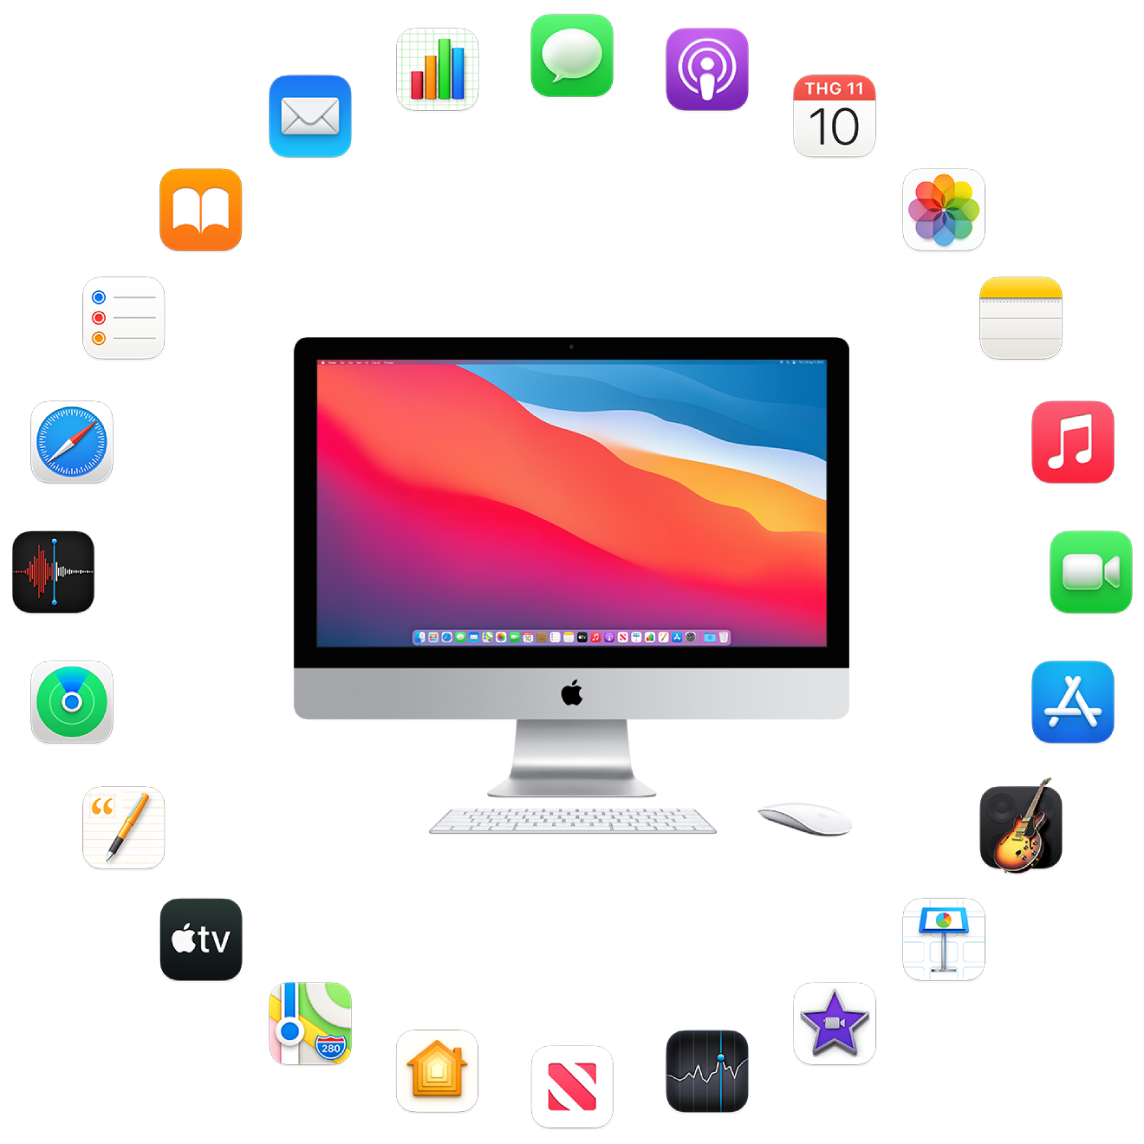 iMac được bao quanh bởi biểu tượng cho các ứng dụng tích hợp được mô tả trong các phần sau.